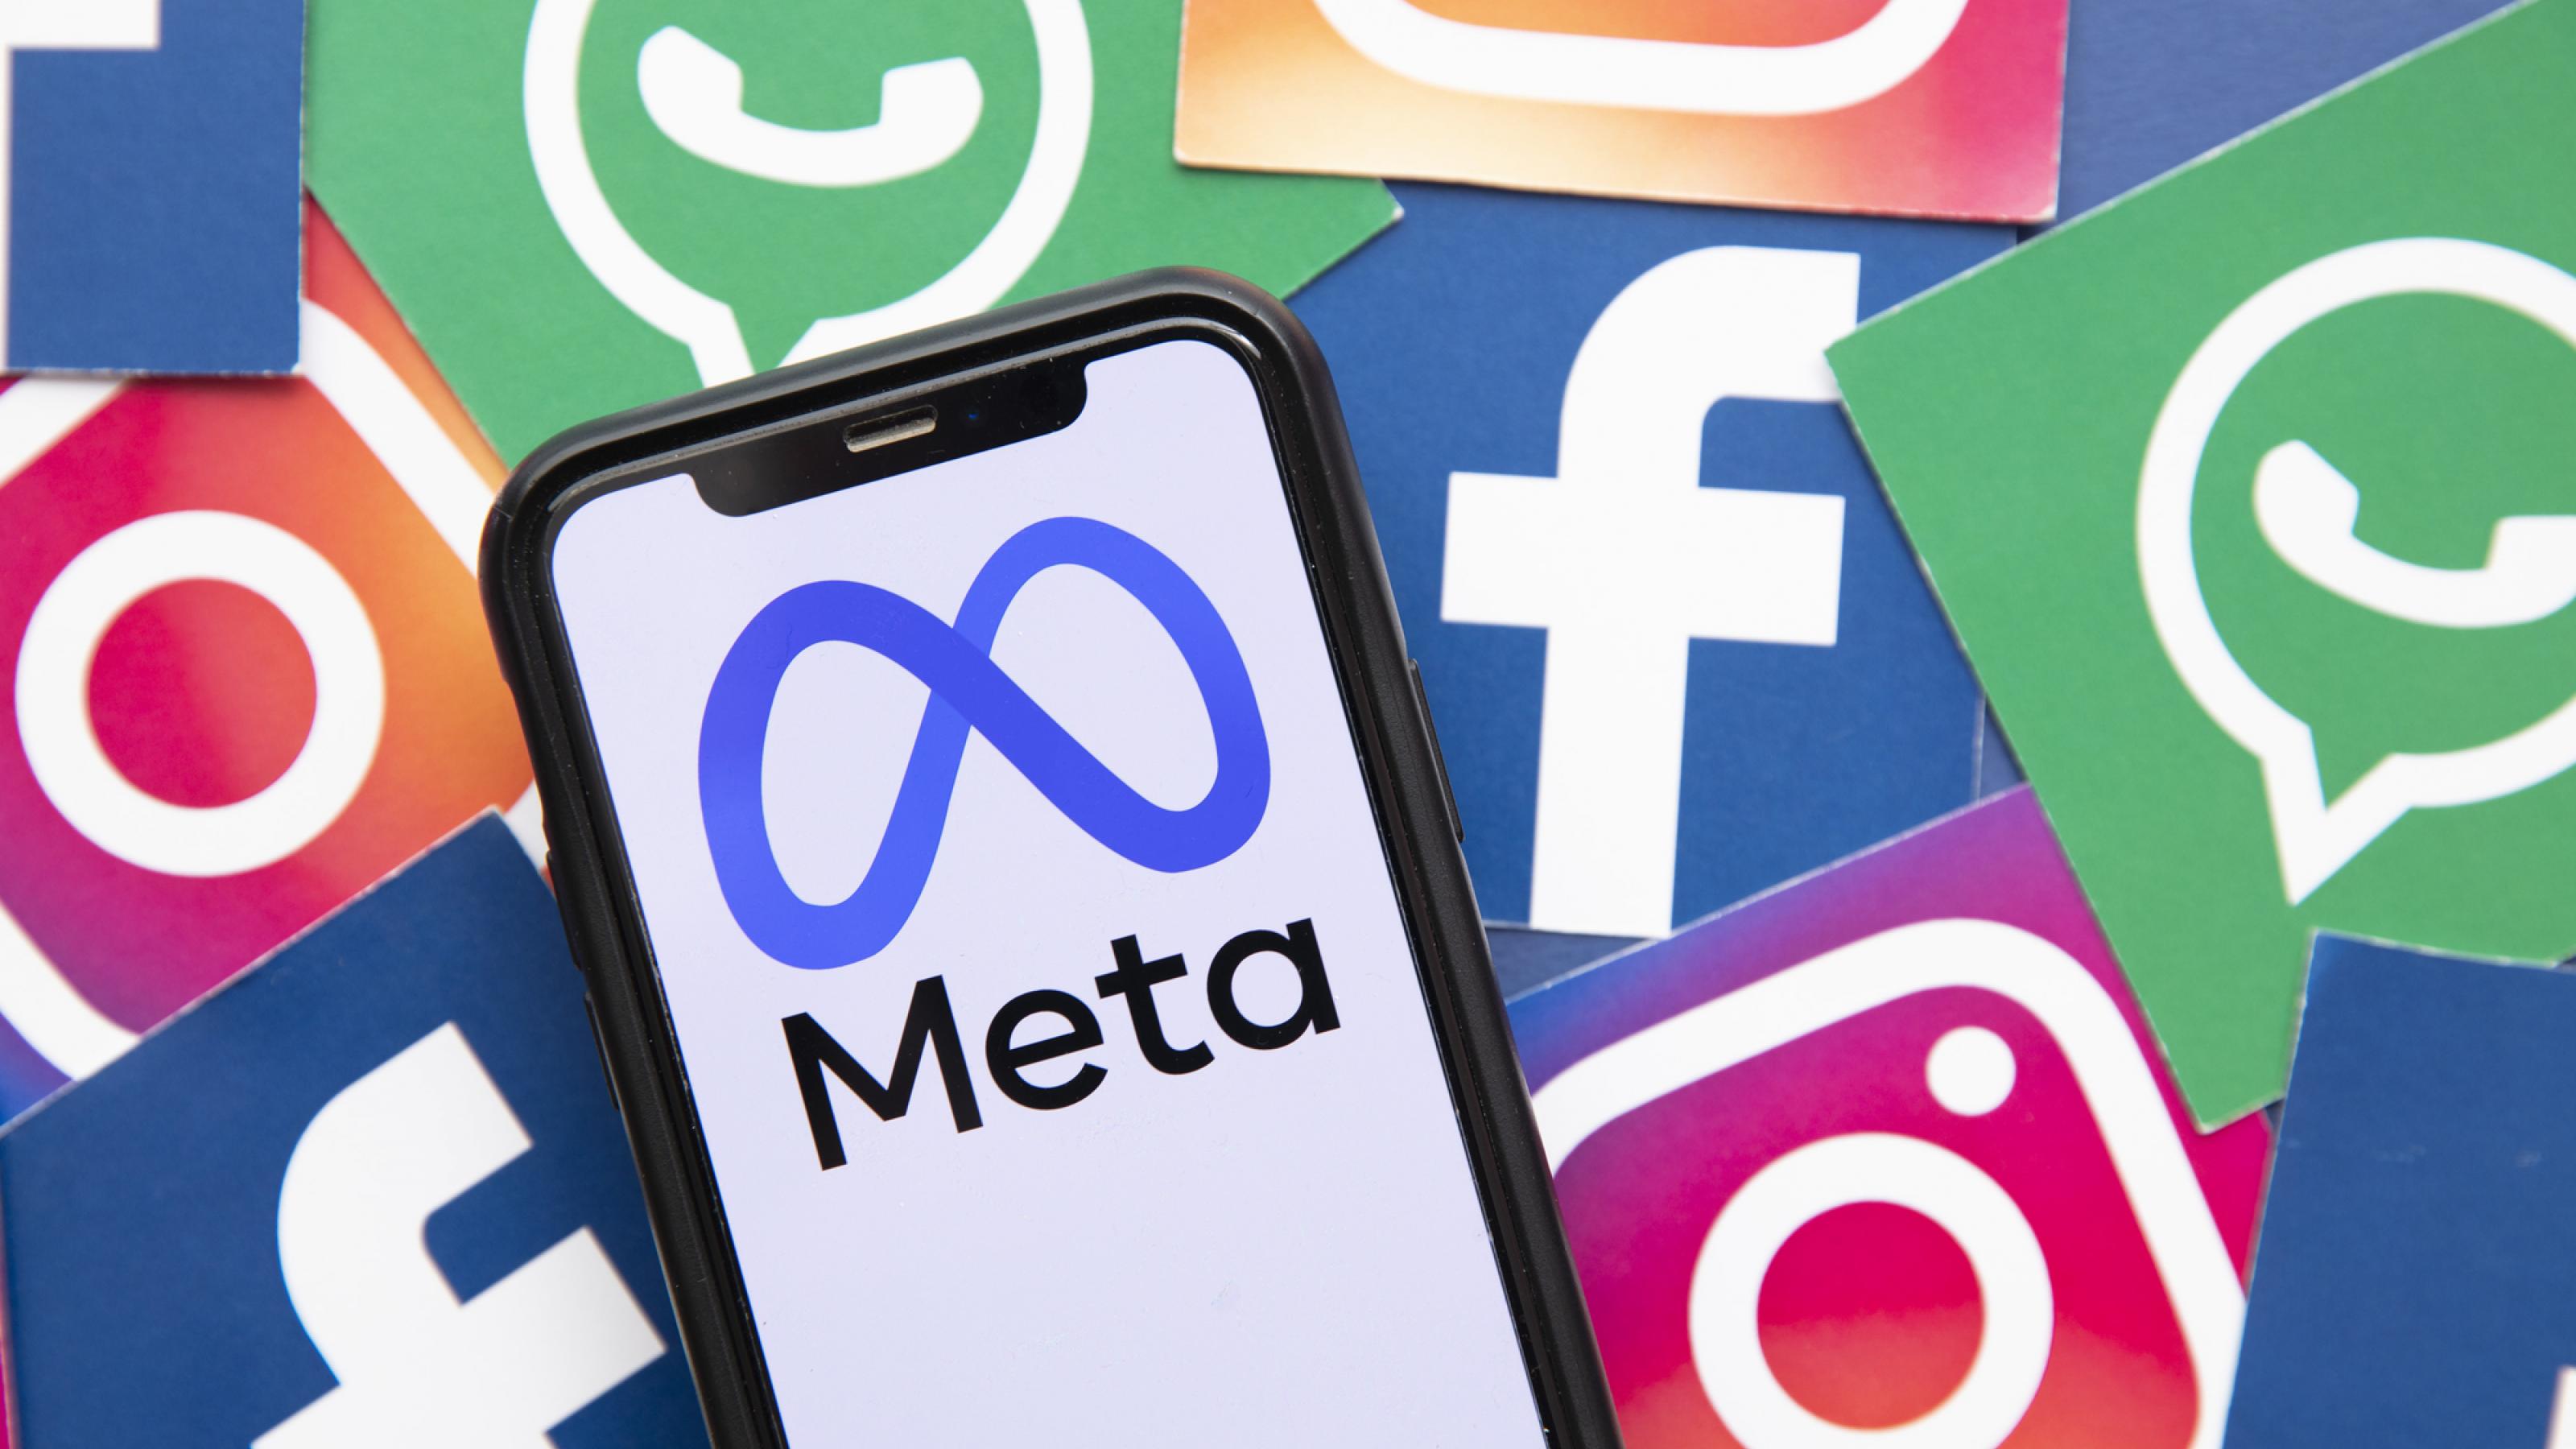 Faceboo, instagram und Whatsapp – ihre Datenschutzrichtlinien werden vom Mutterkonzern Meta diktiert